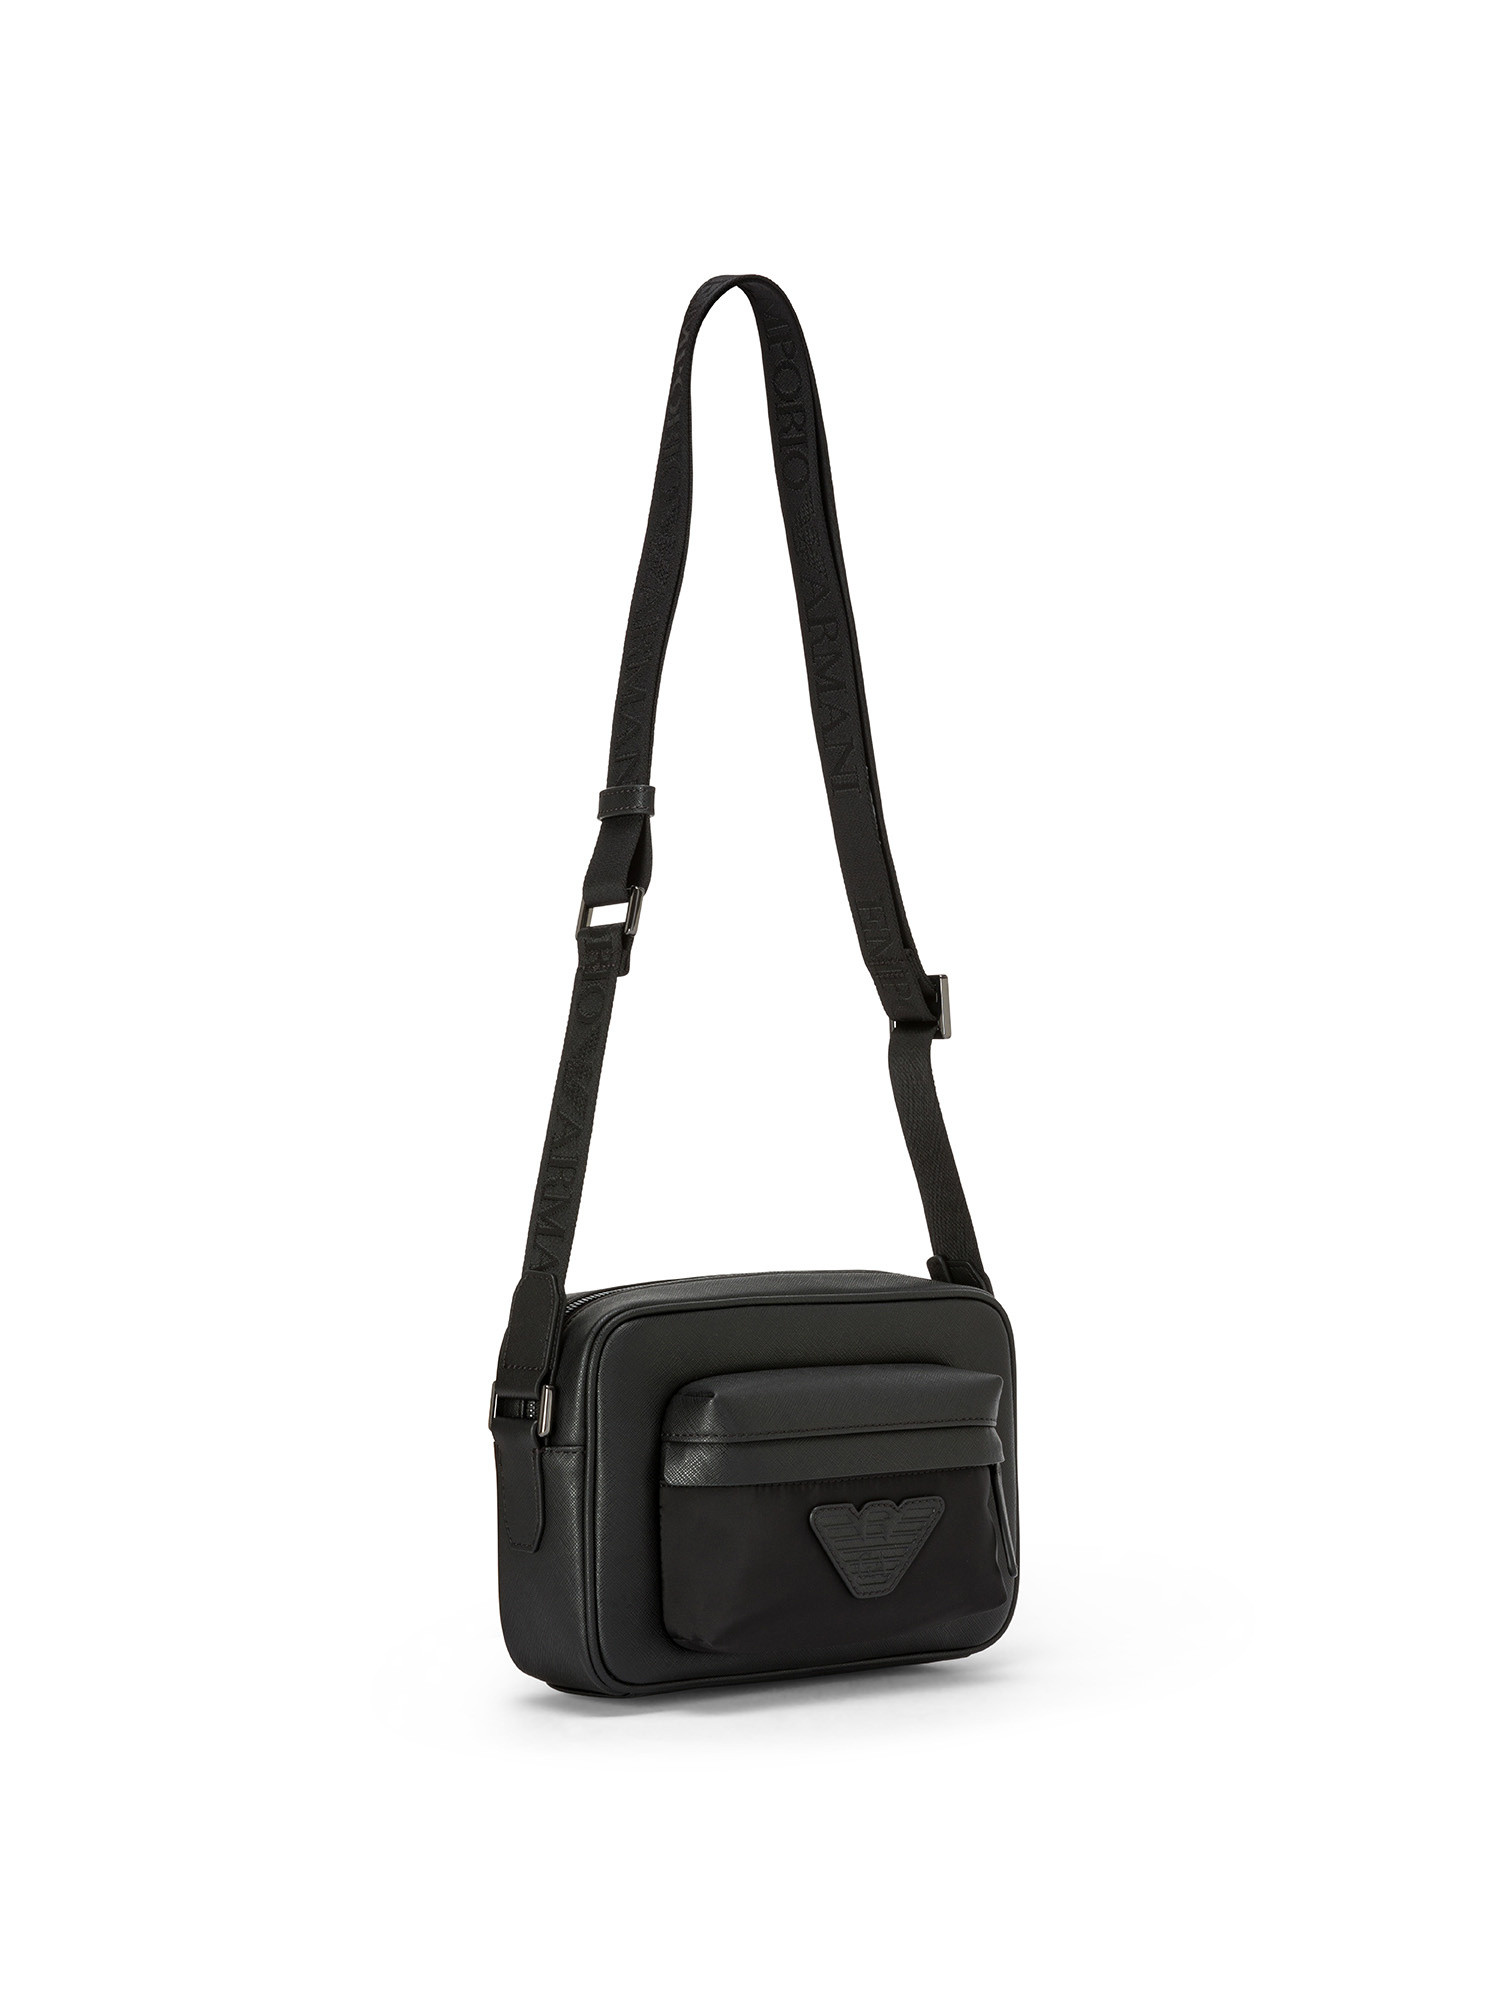 Emporio Armani - Leather shoulder bag with logo, Black, large image number 1